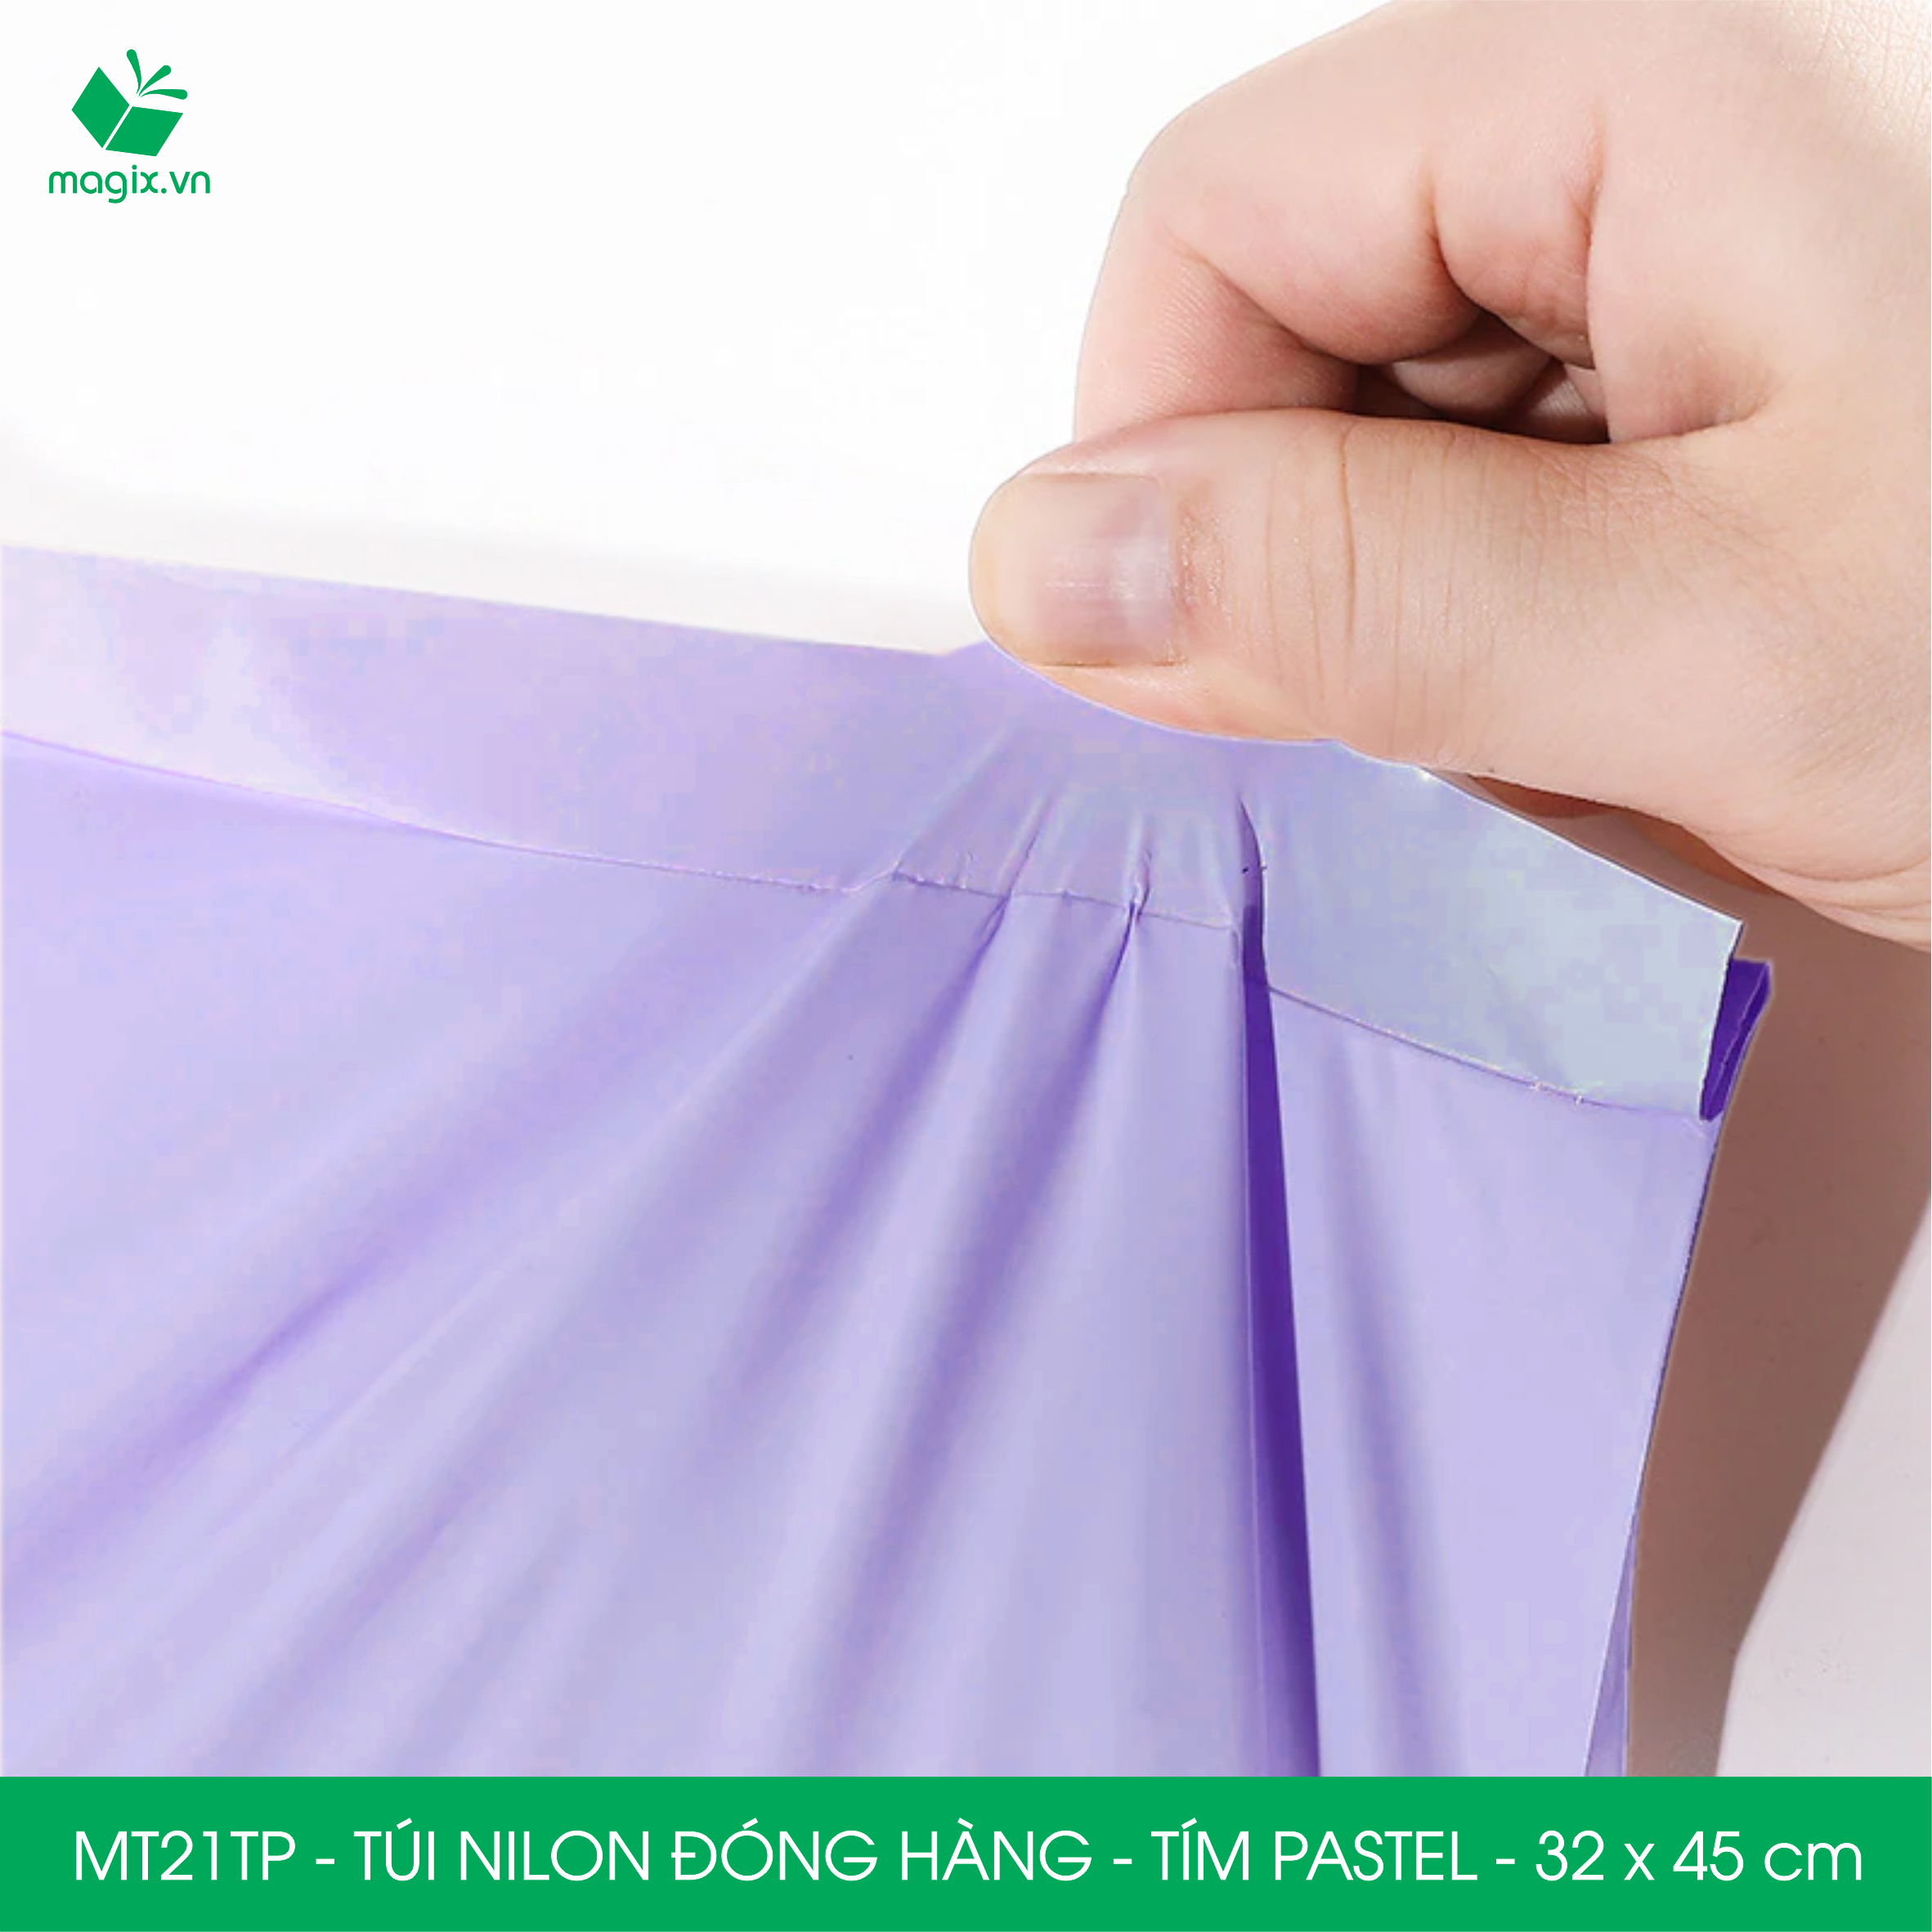 MT21TP - 32x45 cm - Túi nilon gói hàng - 100 túi niêm phong đóng hàng màu tím pastel